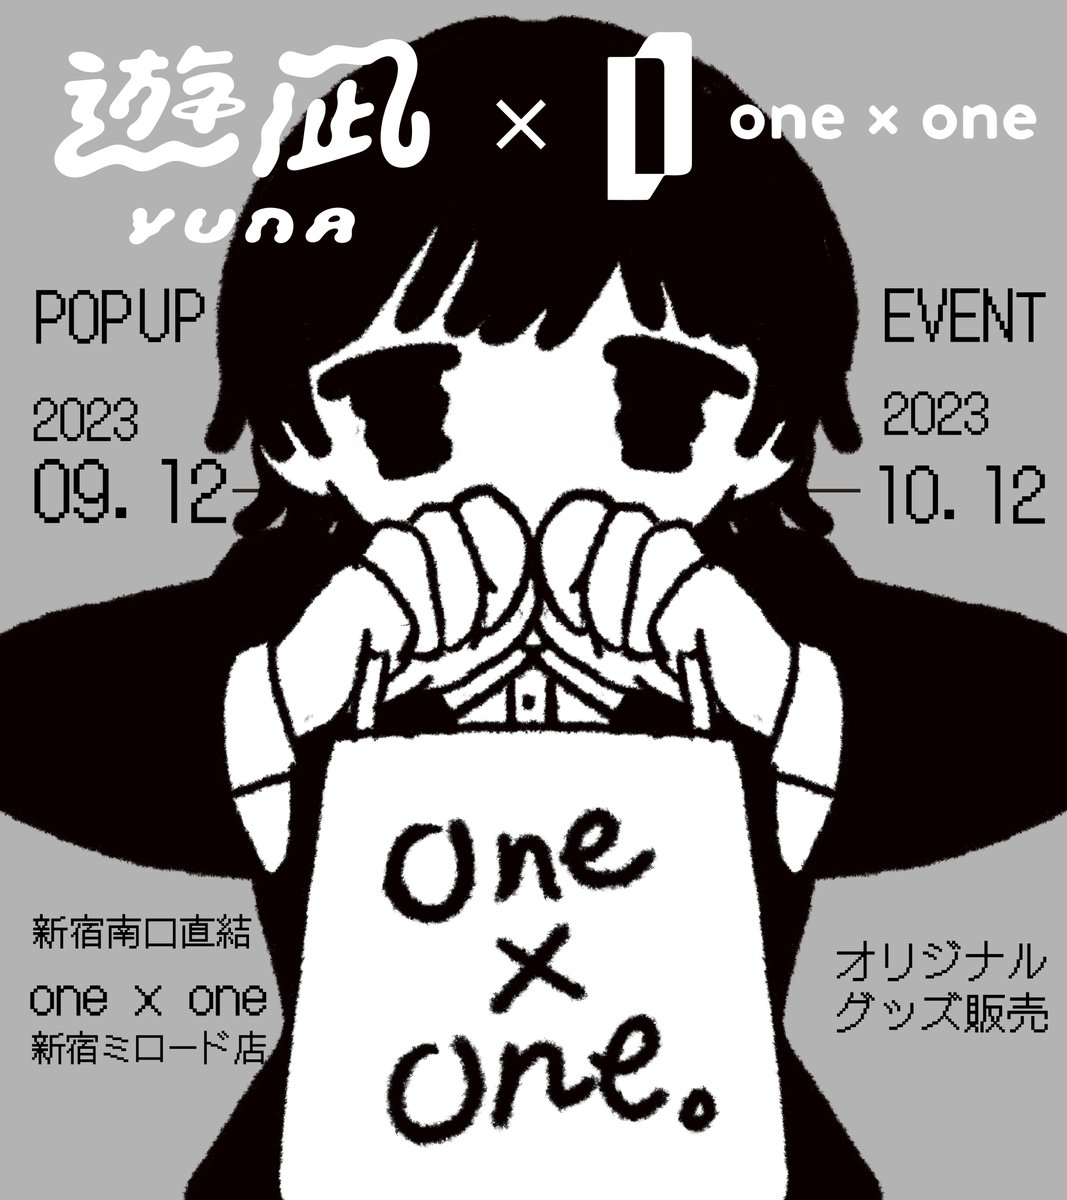 【お知らせ】
新宿駅南口直結👀
「one × one」新宿ミロード店にて
9/12〜約1ヶ月間POPUPを開催します◎

新作グッズもたくさん準備して置かせてもらいます🩶
人気のMDキーホルダーも初めての店頭での販売となります🔥

便利な場所にあるのでぜひみなさん立ち寄ってみてください!

#POPUP 